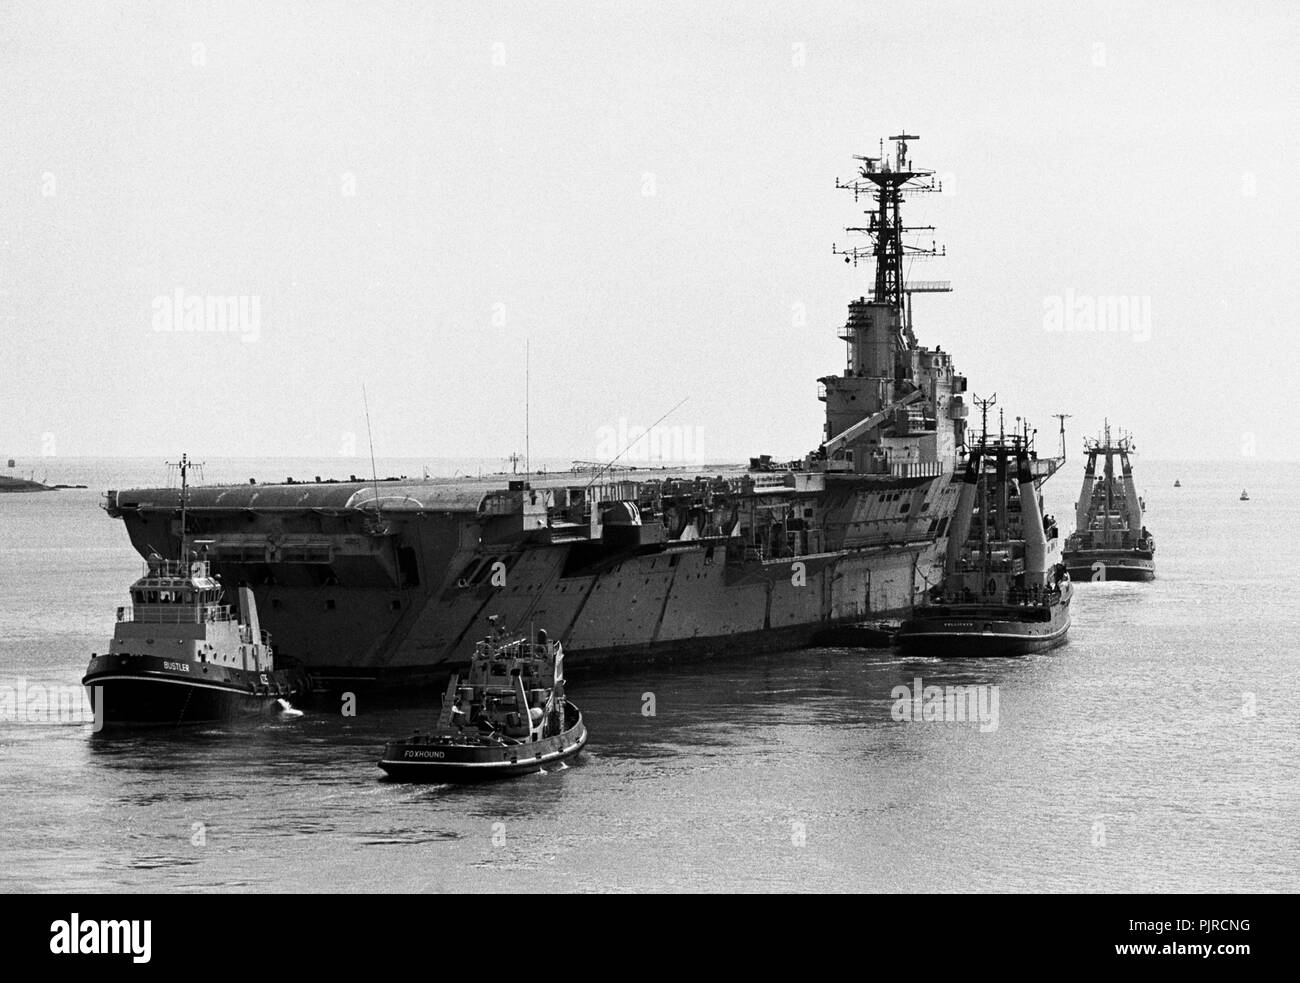 AJAXNETPHOTO. 1984. PORTSMOUTH, ENLAND. - Ferrailles lié - LE PORTE-AVIONS HMS REMPART REMORQUÉ HORS DE LA BASE NAVALE À LA FERRAILLE EN 1984. PHOTO:JONATHAN EASTLAND/AJAX. REF:HDN(NA)AC/rempart  100484 31A. Banque D'Images